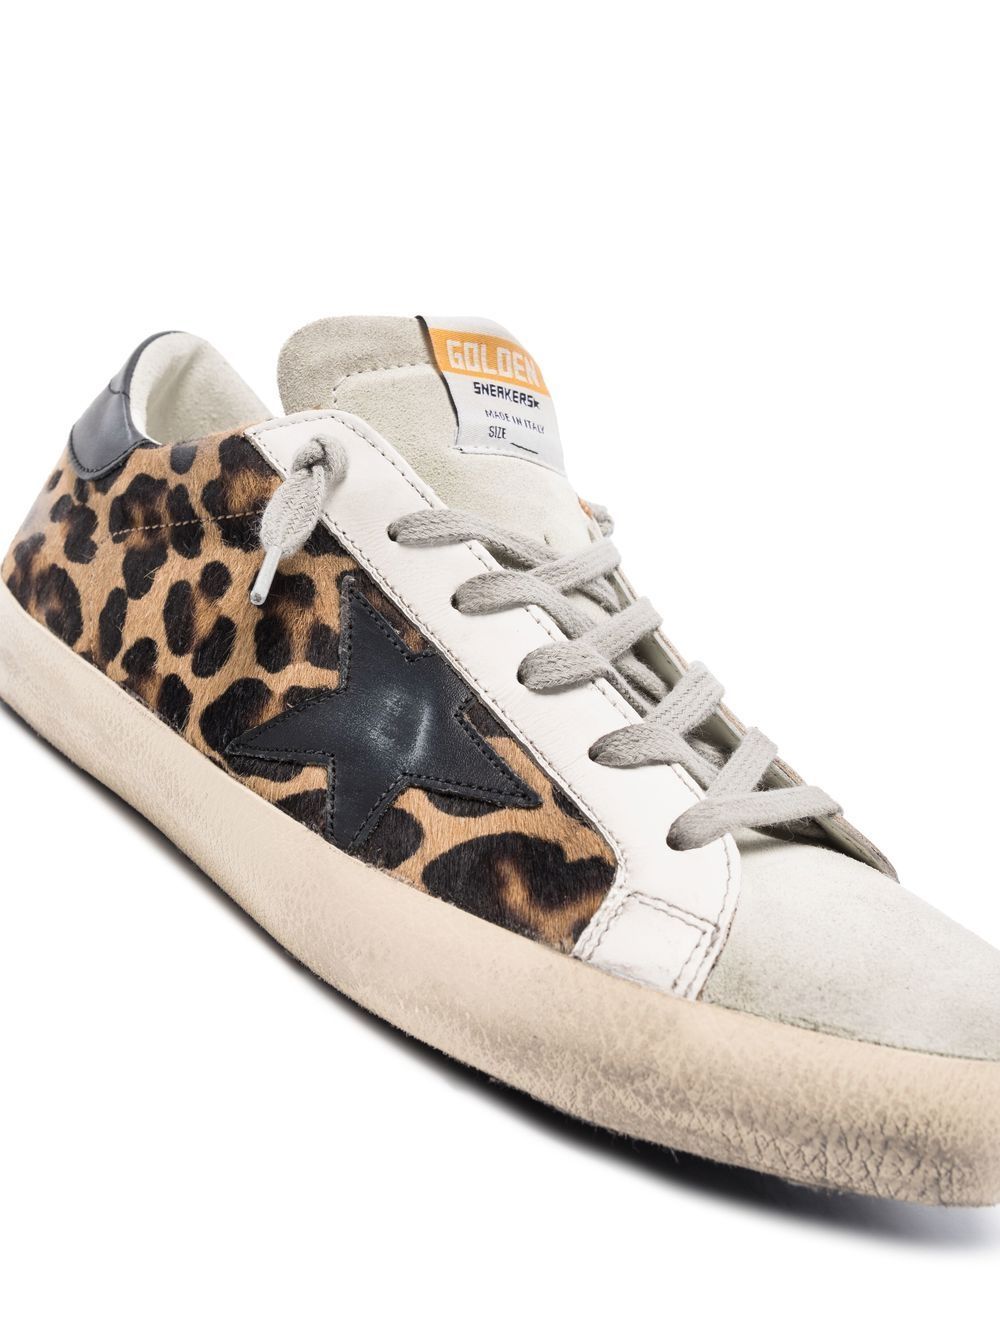 GOLDEN GOOSE Leopard Print Sneakers for Women